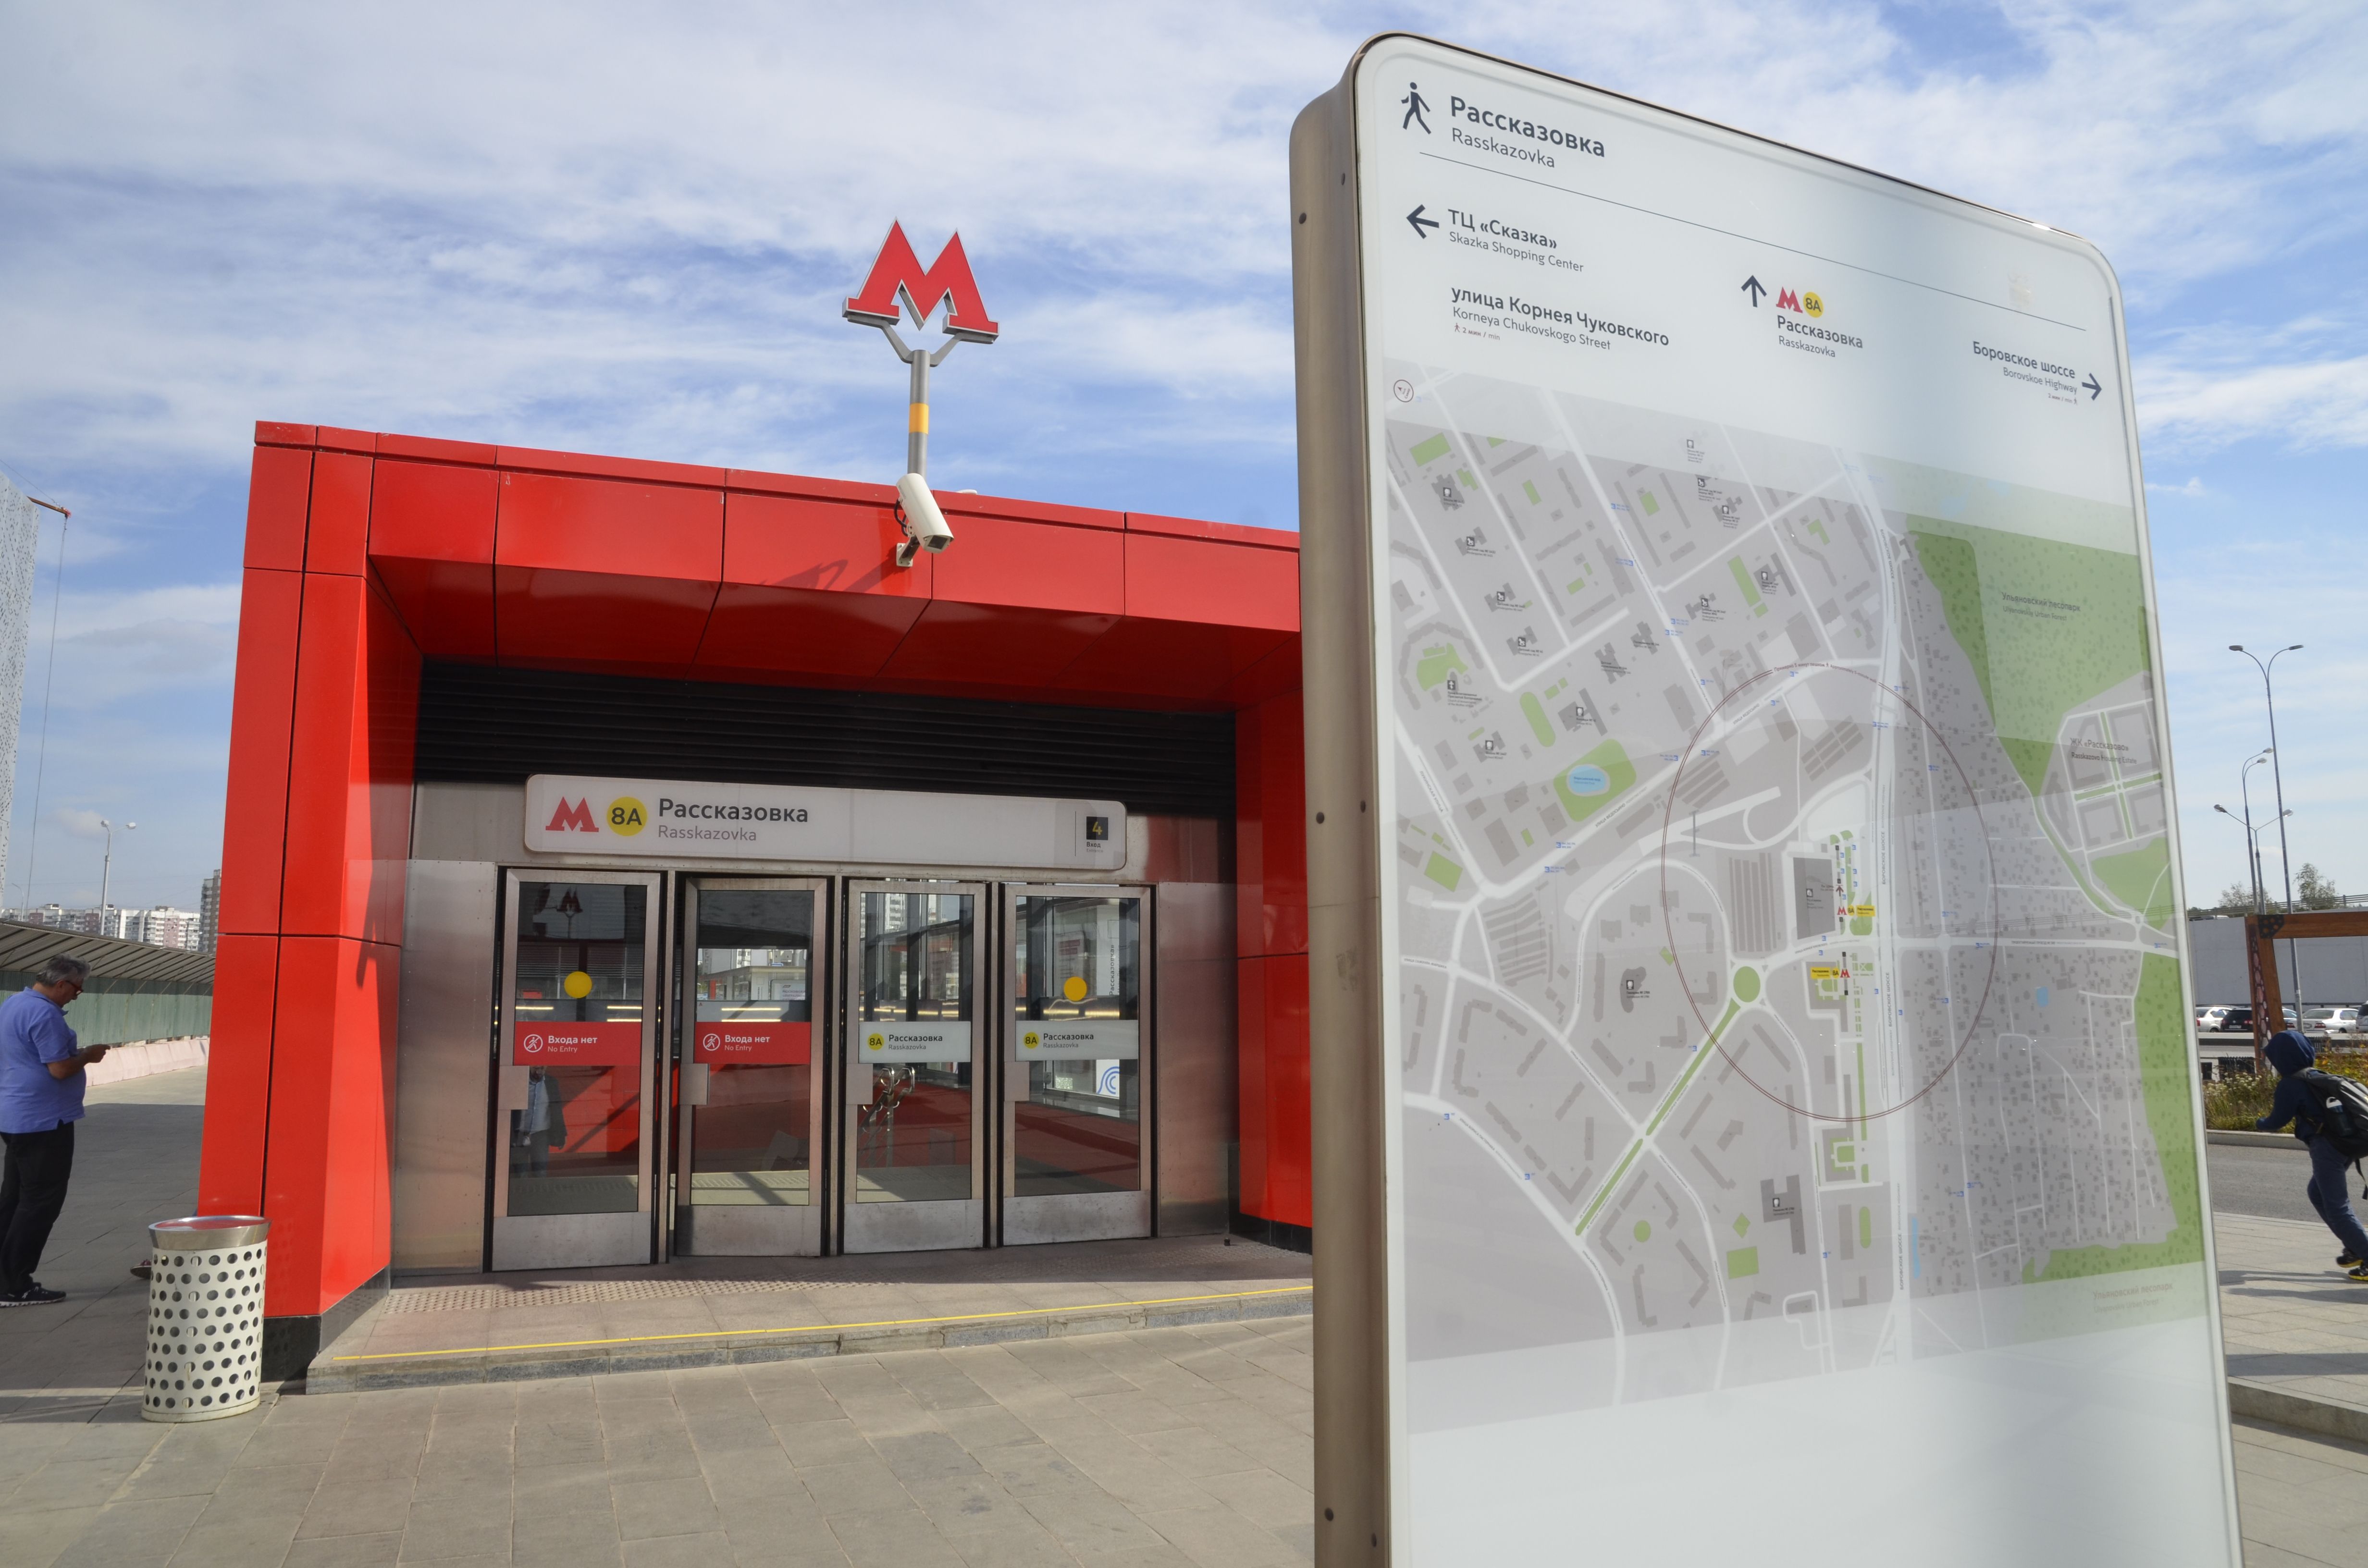 Вестибюли станции метро «Рассказовка» и МЦК «Площадь Гагарина» временно закрыли